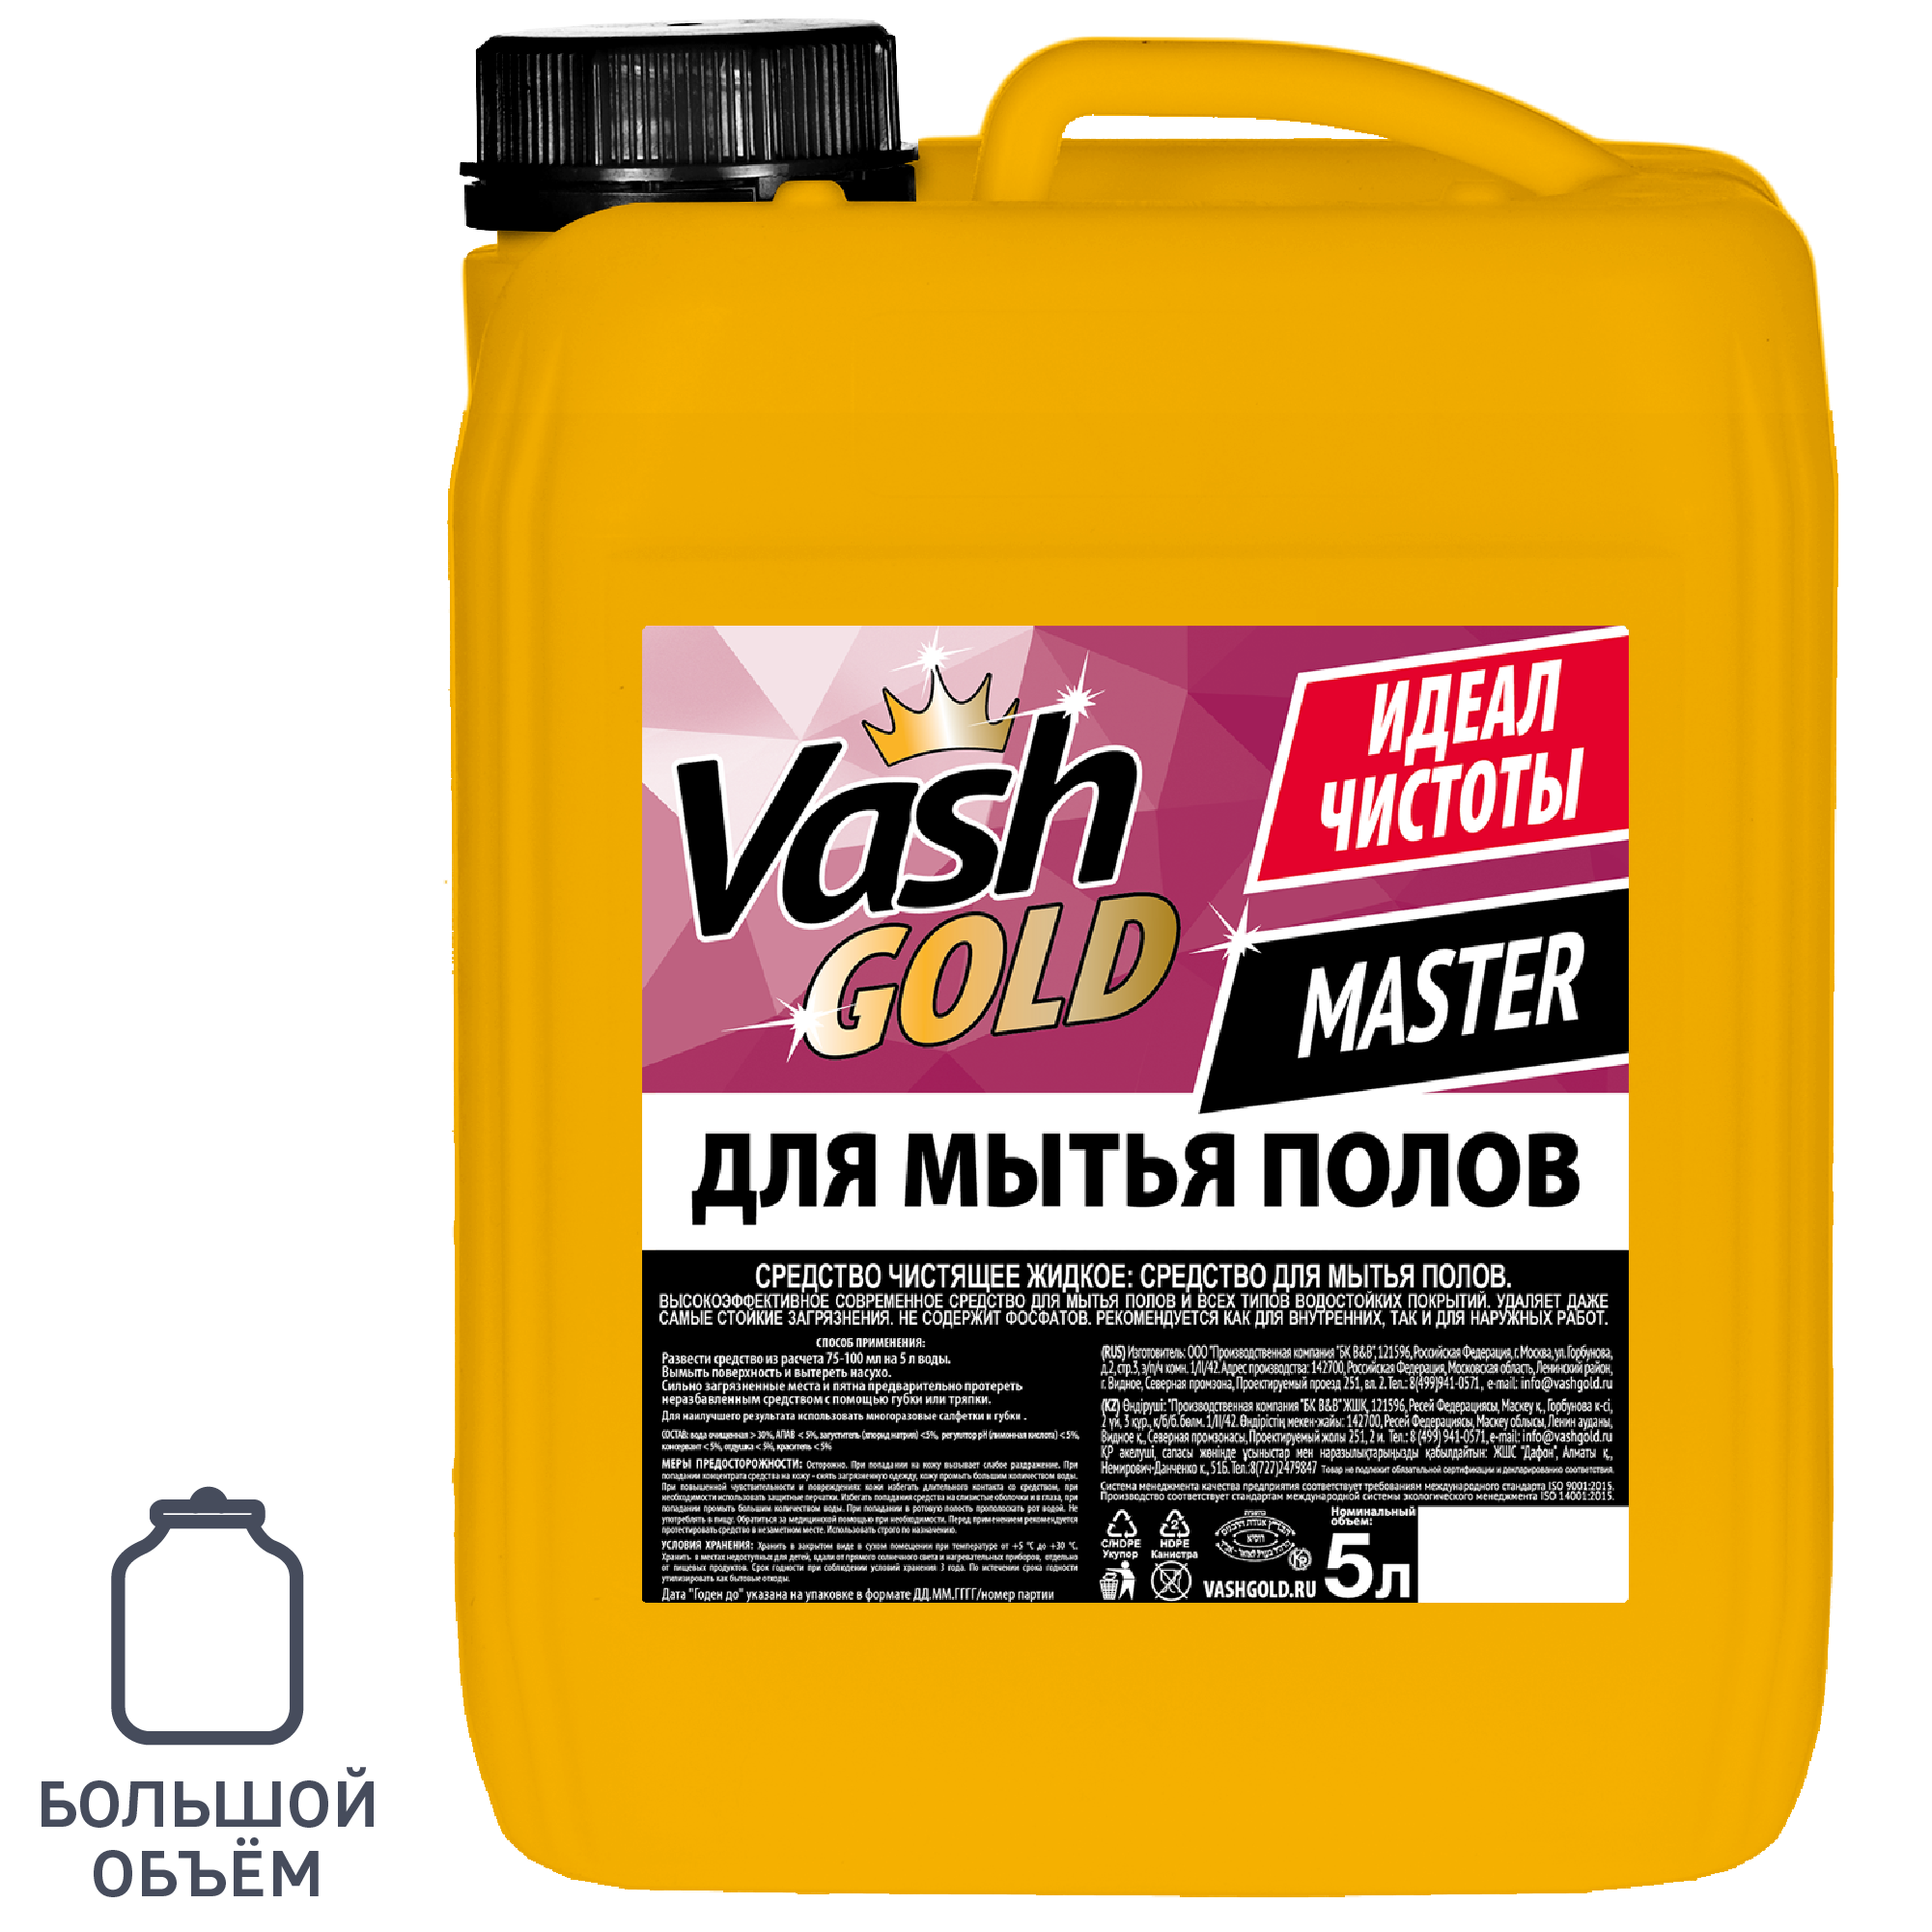 83738434 Средство для мытья полов 5 л STLM-0044111 VASH GOLD